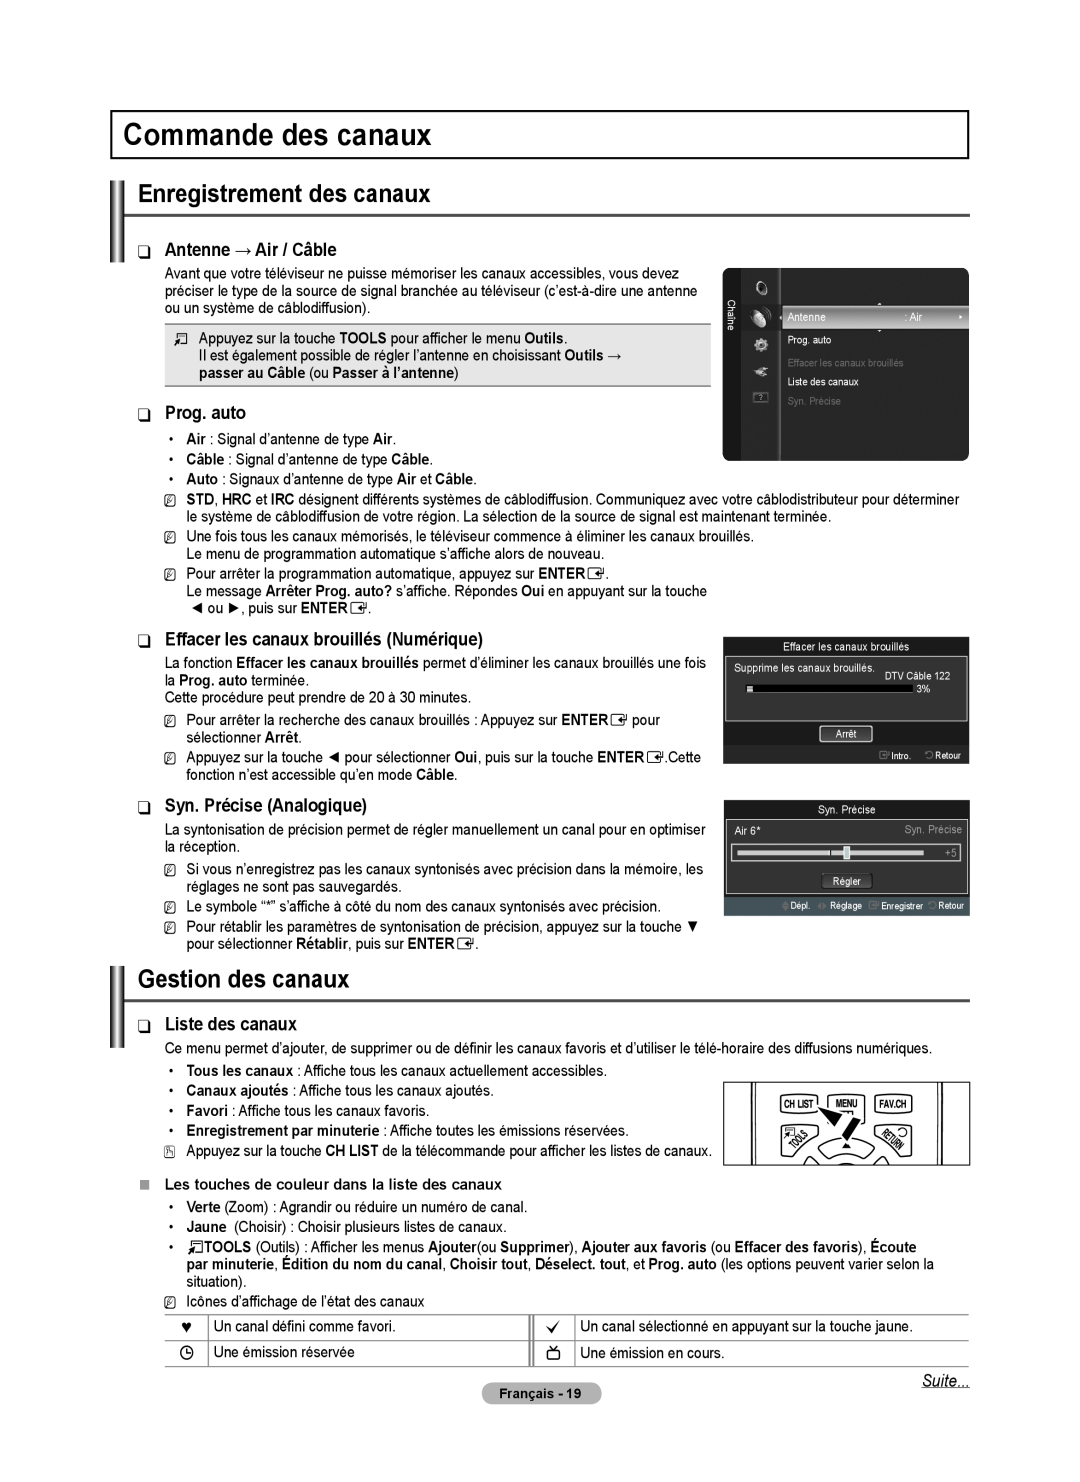 Samsung BN68-02426A-00 Commande des canaux, Antenne → Air / Câble, Prog. auto, Effacer les canaux brouillés Numérique 